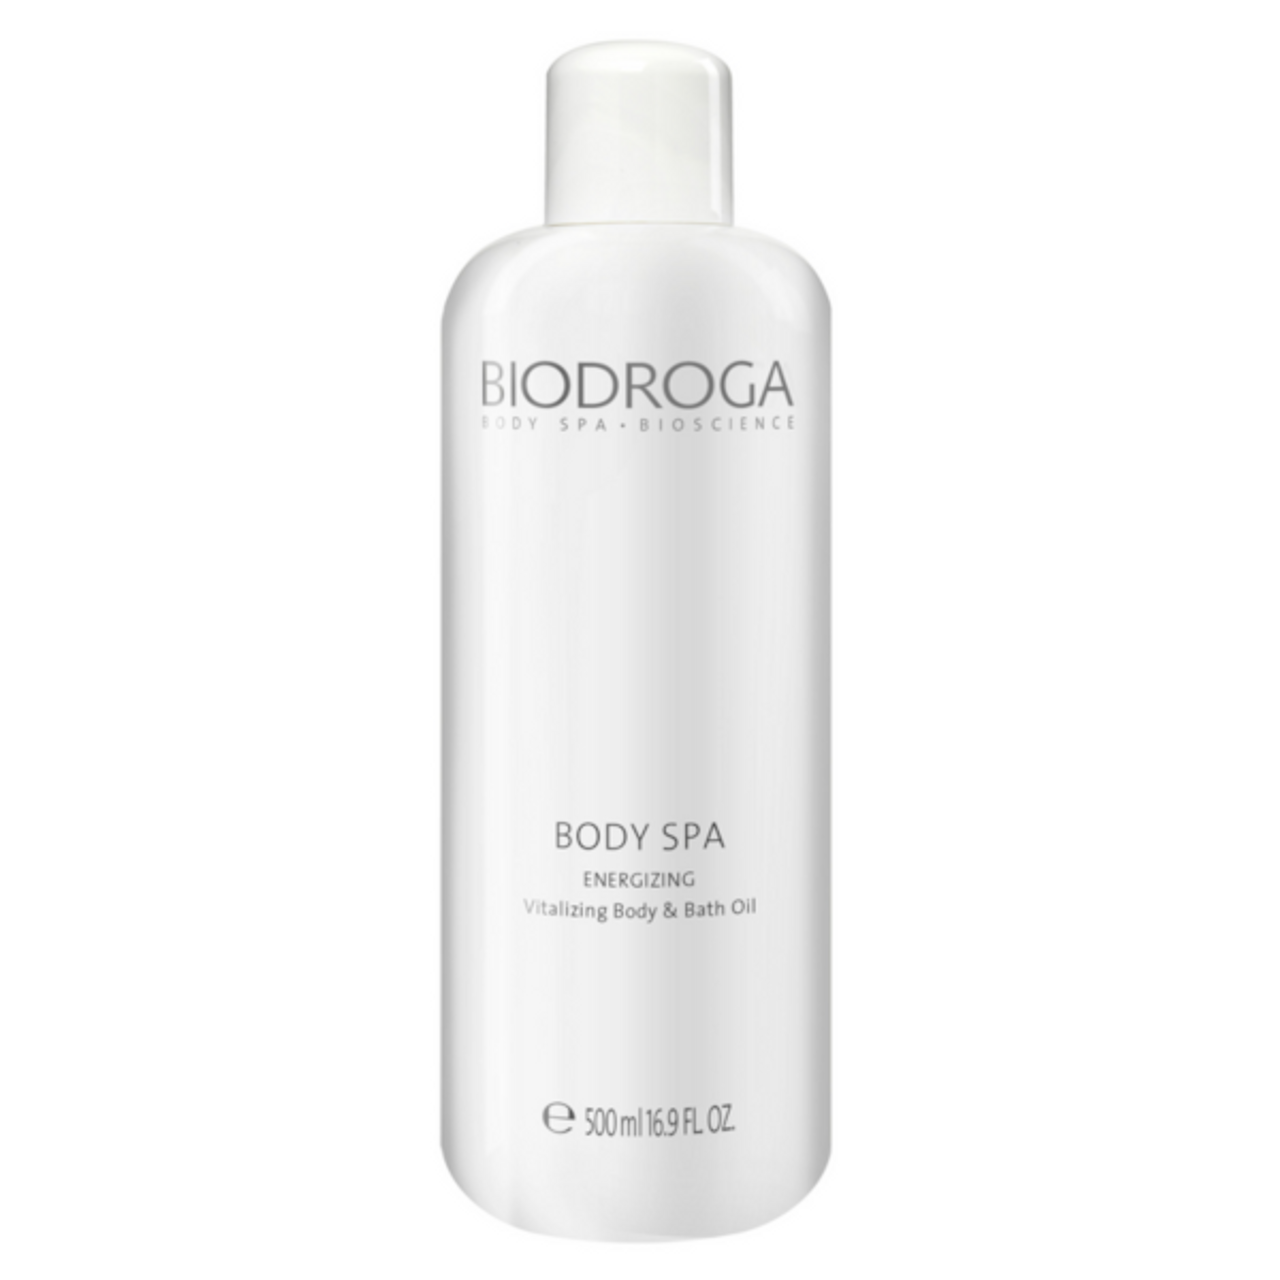 Biodroga Vitalizing Body & Bath Oil